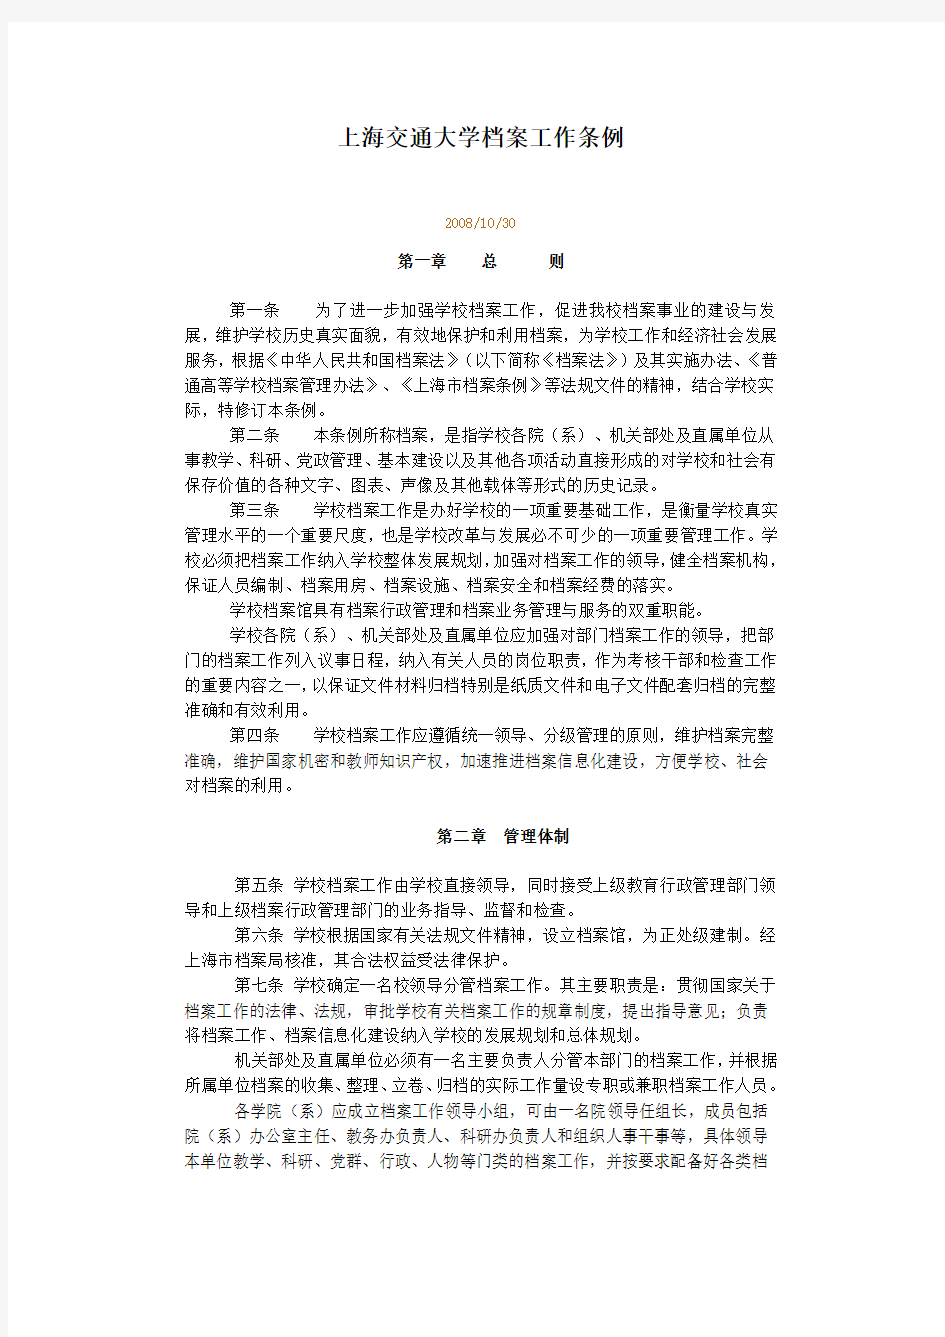 上海交通大学档案管理条例